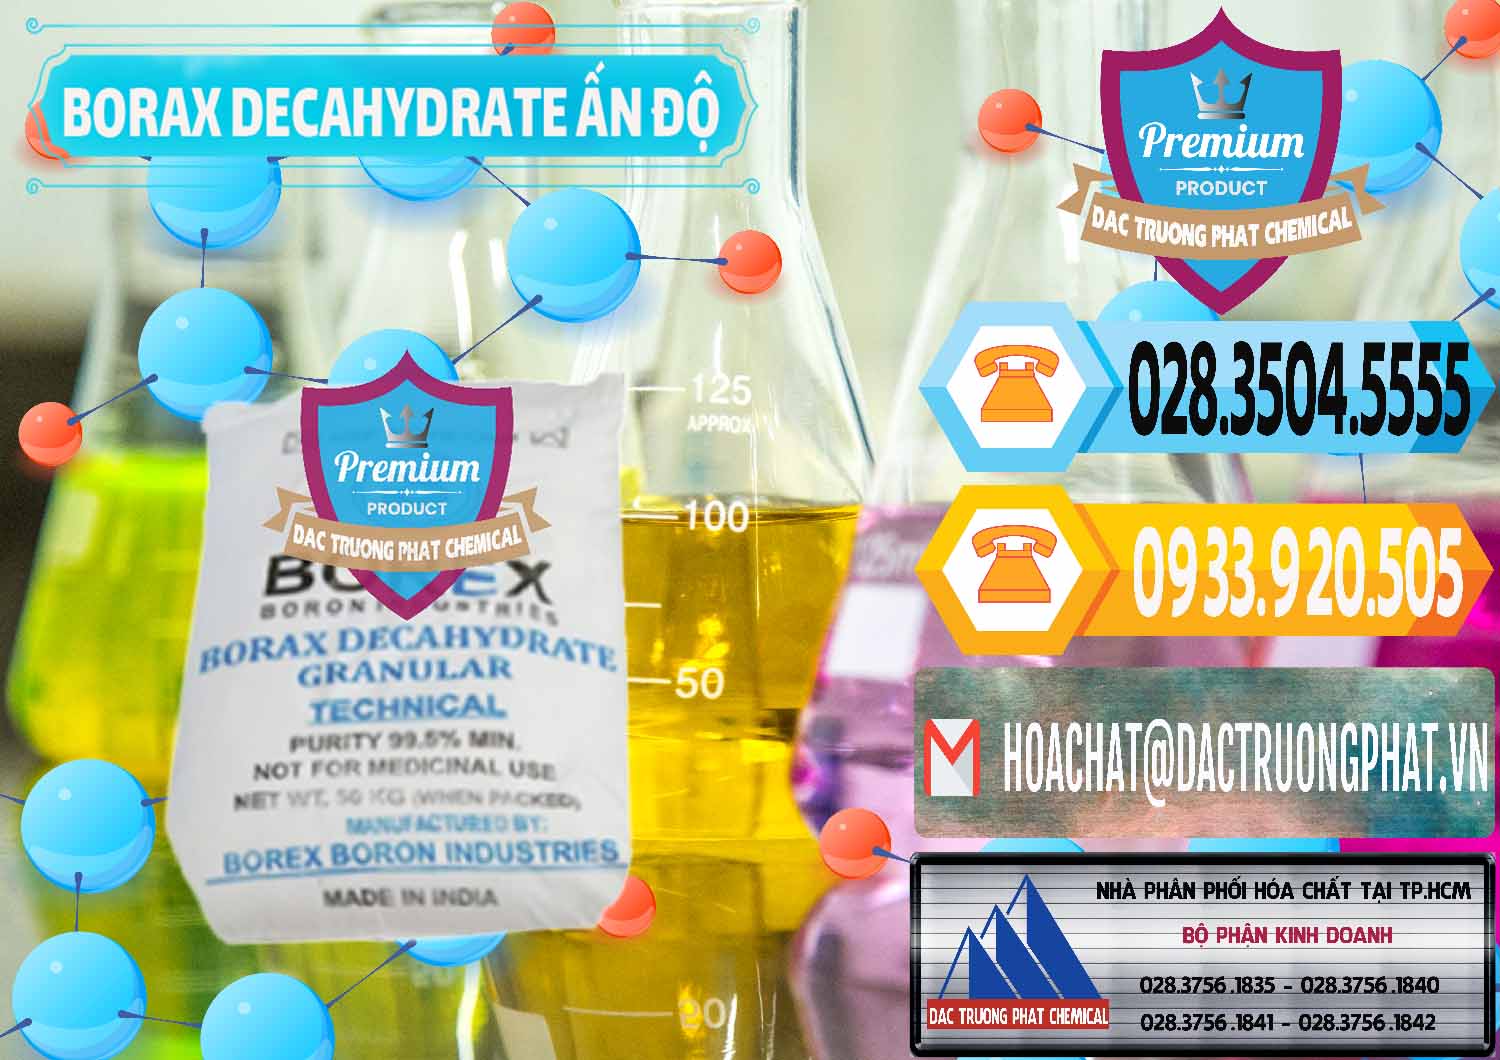 Nơi chuyên cung cấp và bán Borax Decahydrate Ấn Độ India - 0449 - Bán _ cung cấp hóa chất tại TP.HCM - hoachattayrua.net